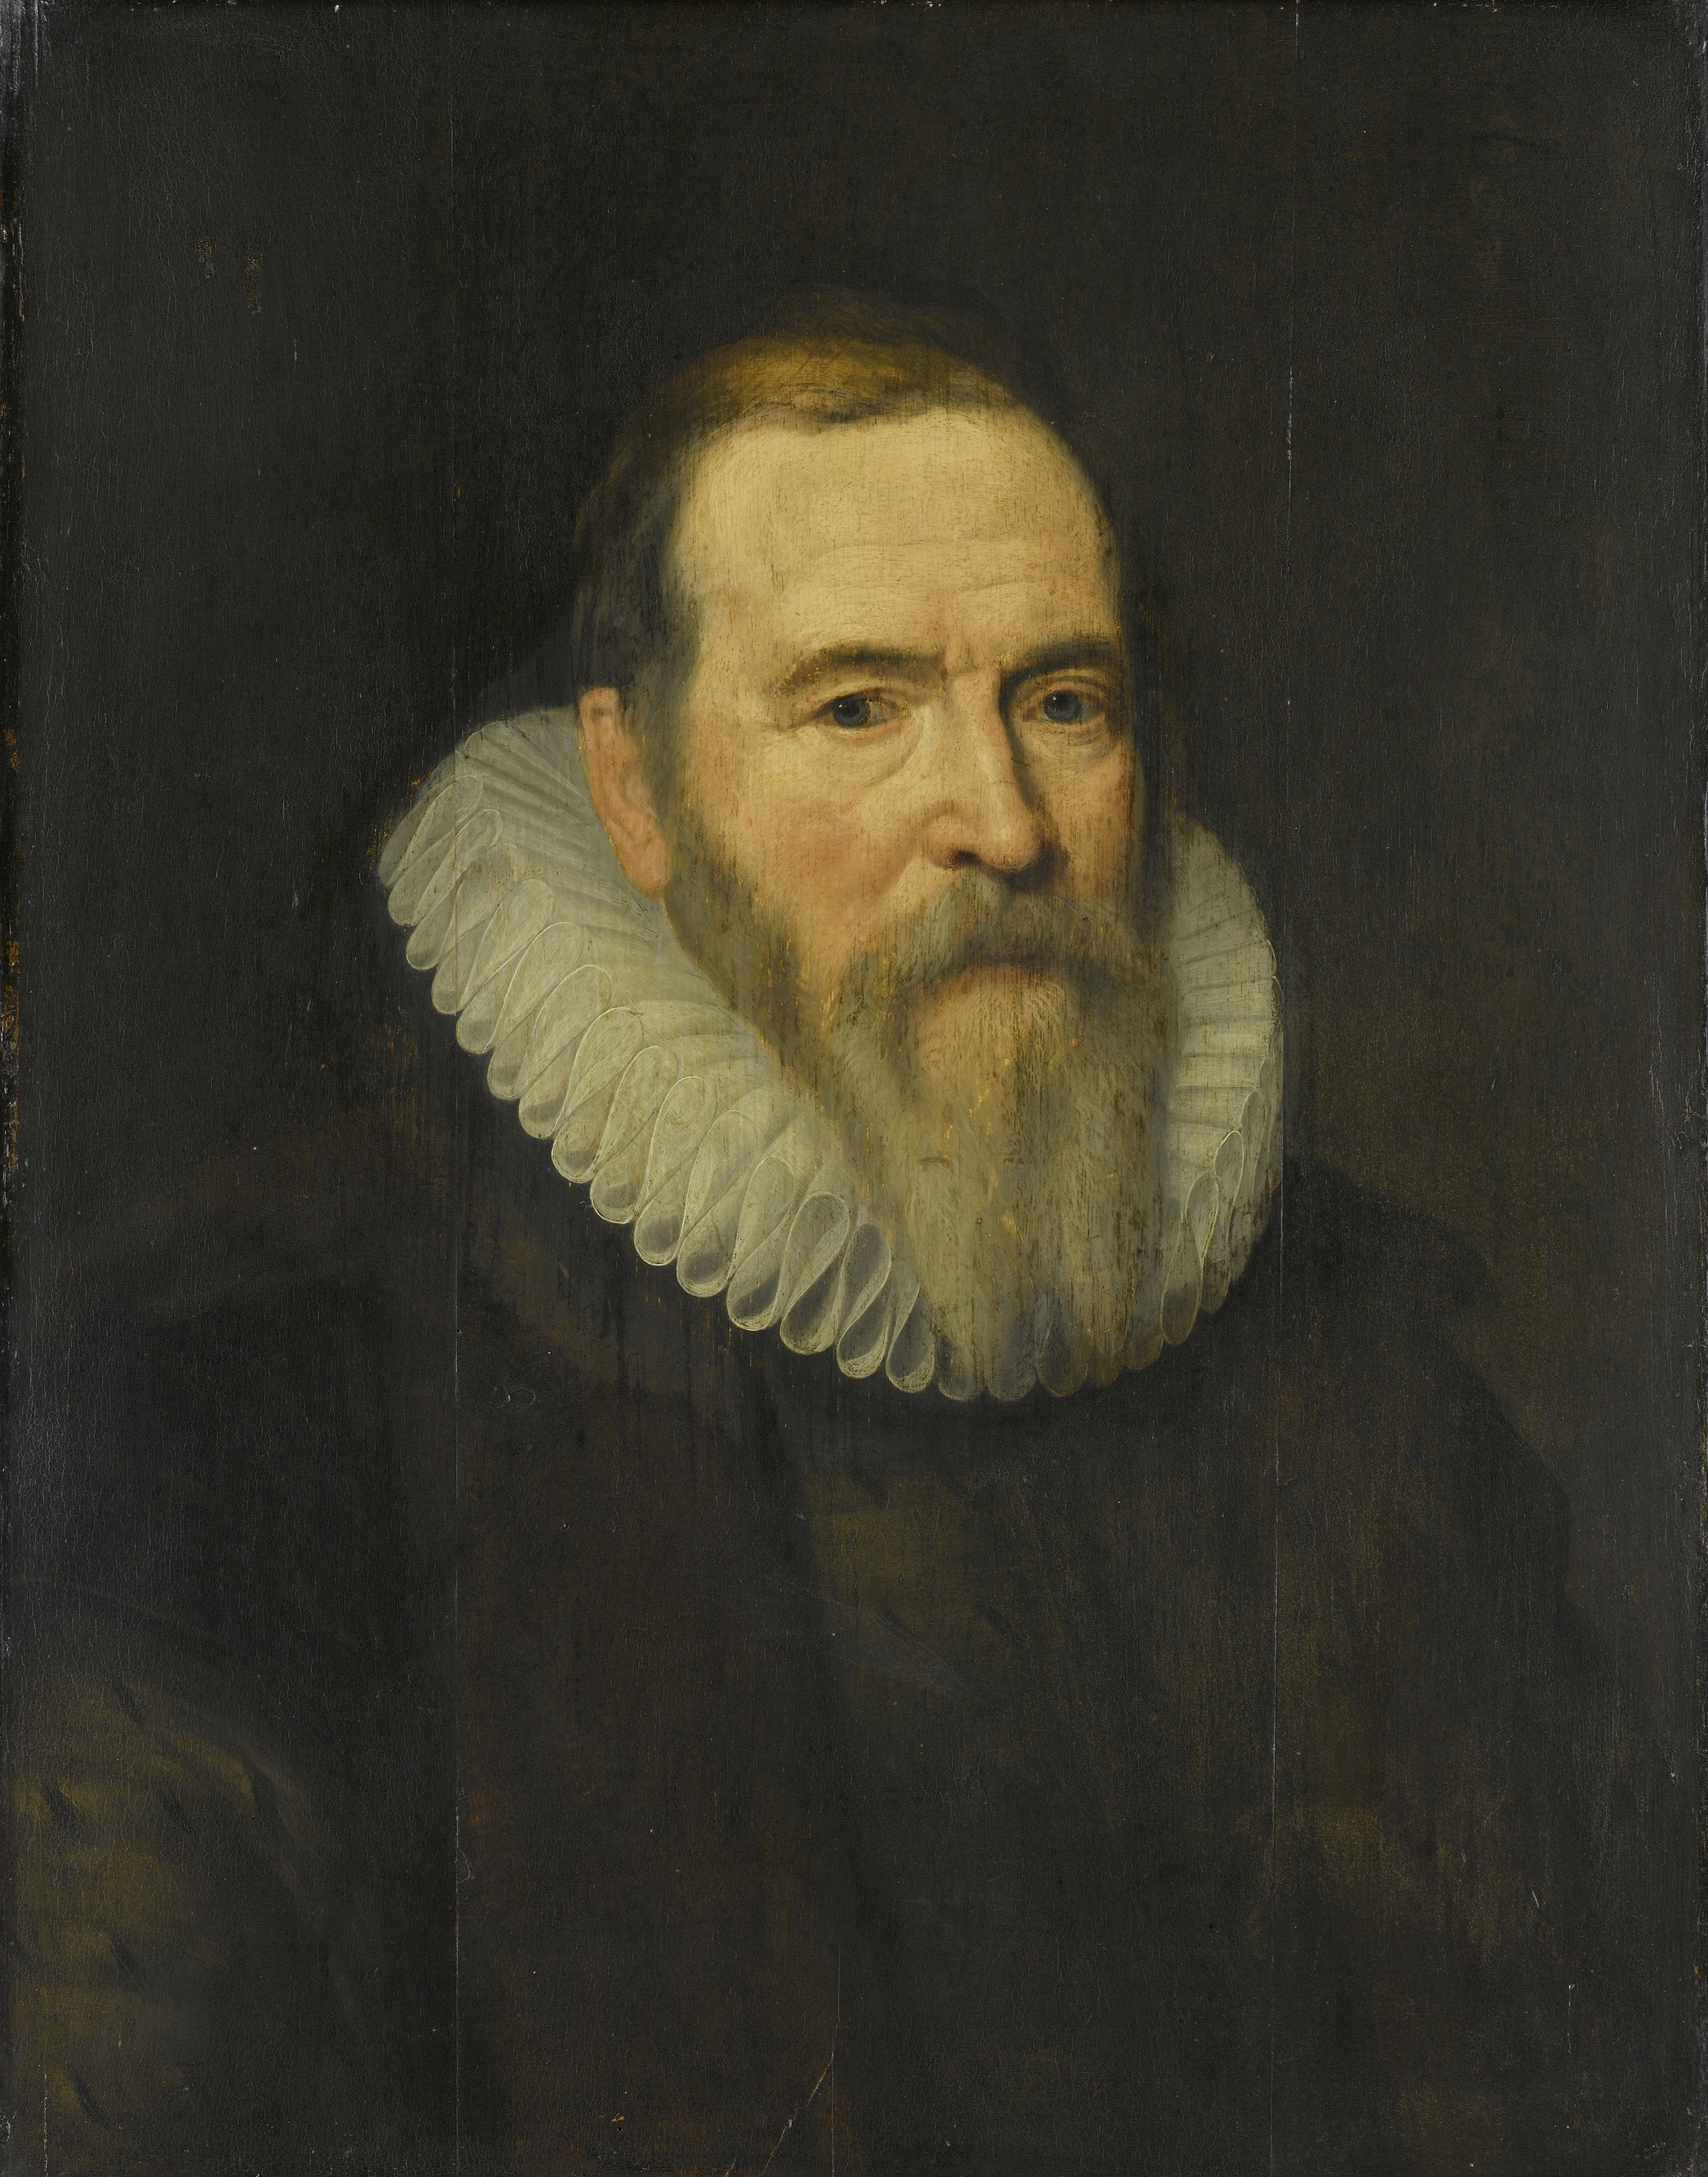 Pierwsze holenderskie kompanie handlowe powstawały spontanicznie, z inicjatywy zainteresowanych kupców. Już w 1602 roku Johan van Oldenbarneveldt nakazał jednak ich zjednoczenie. Takie były początki potężnej Holenderskiej Kompanii Wschodnioindyjskiej. 